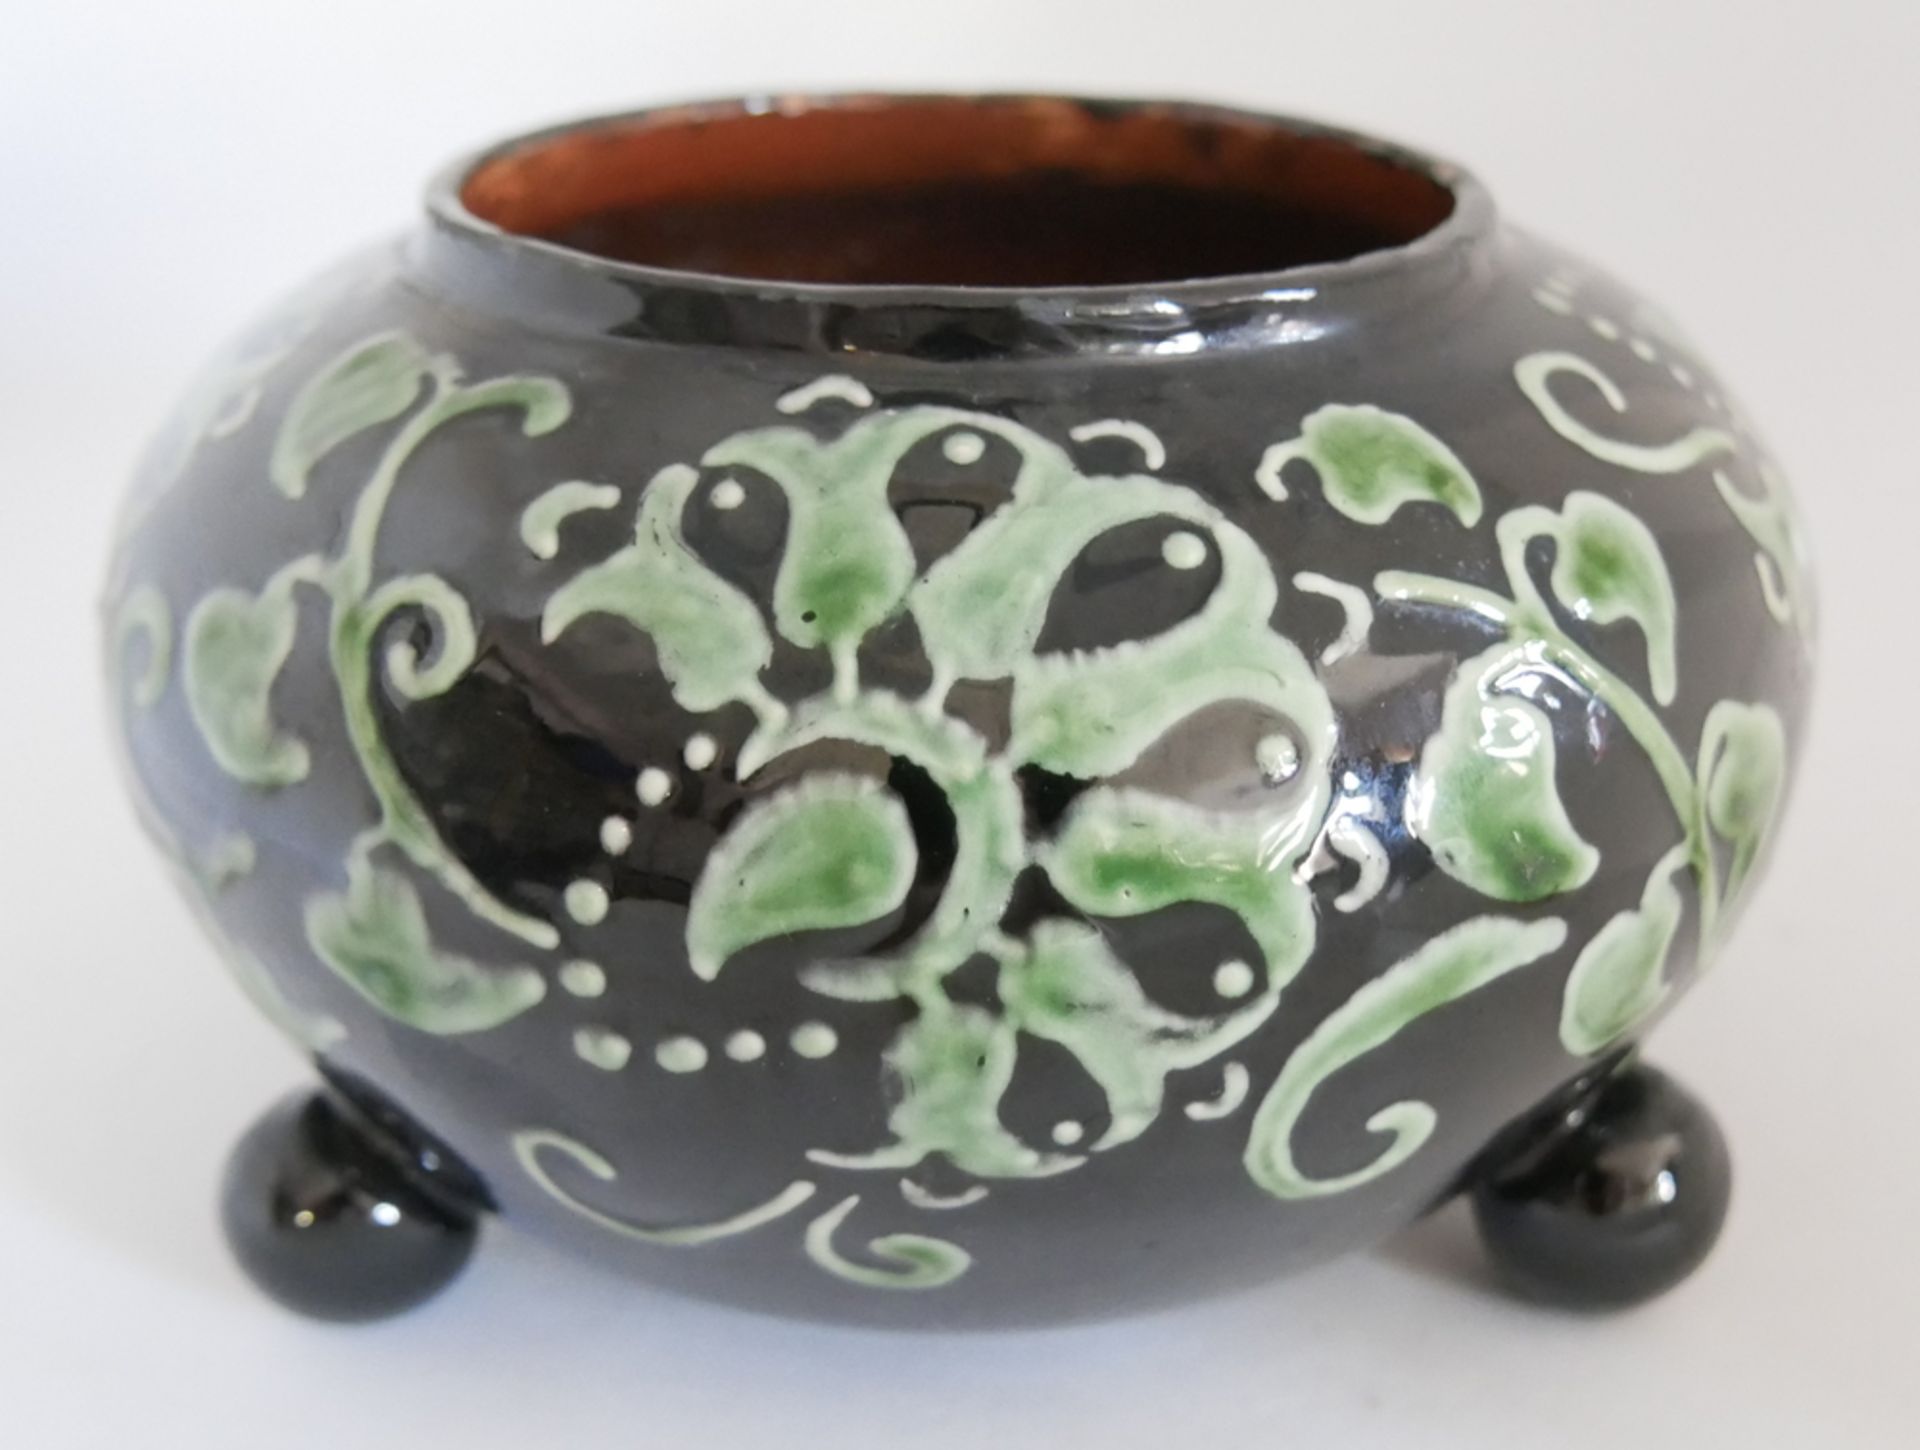 Keramik Vase Kandern am Boden Pressmarke KK im Viereck, Modellnr. 825, schwarz weiße Glasur.